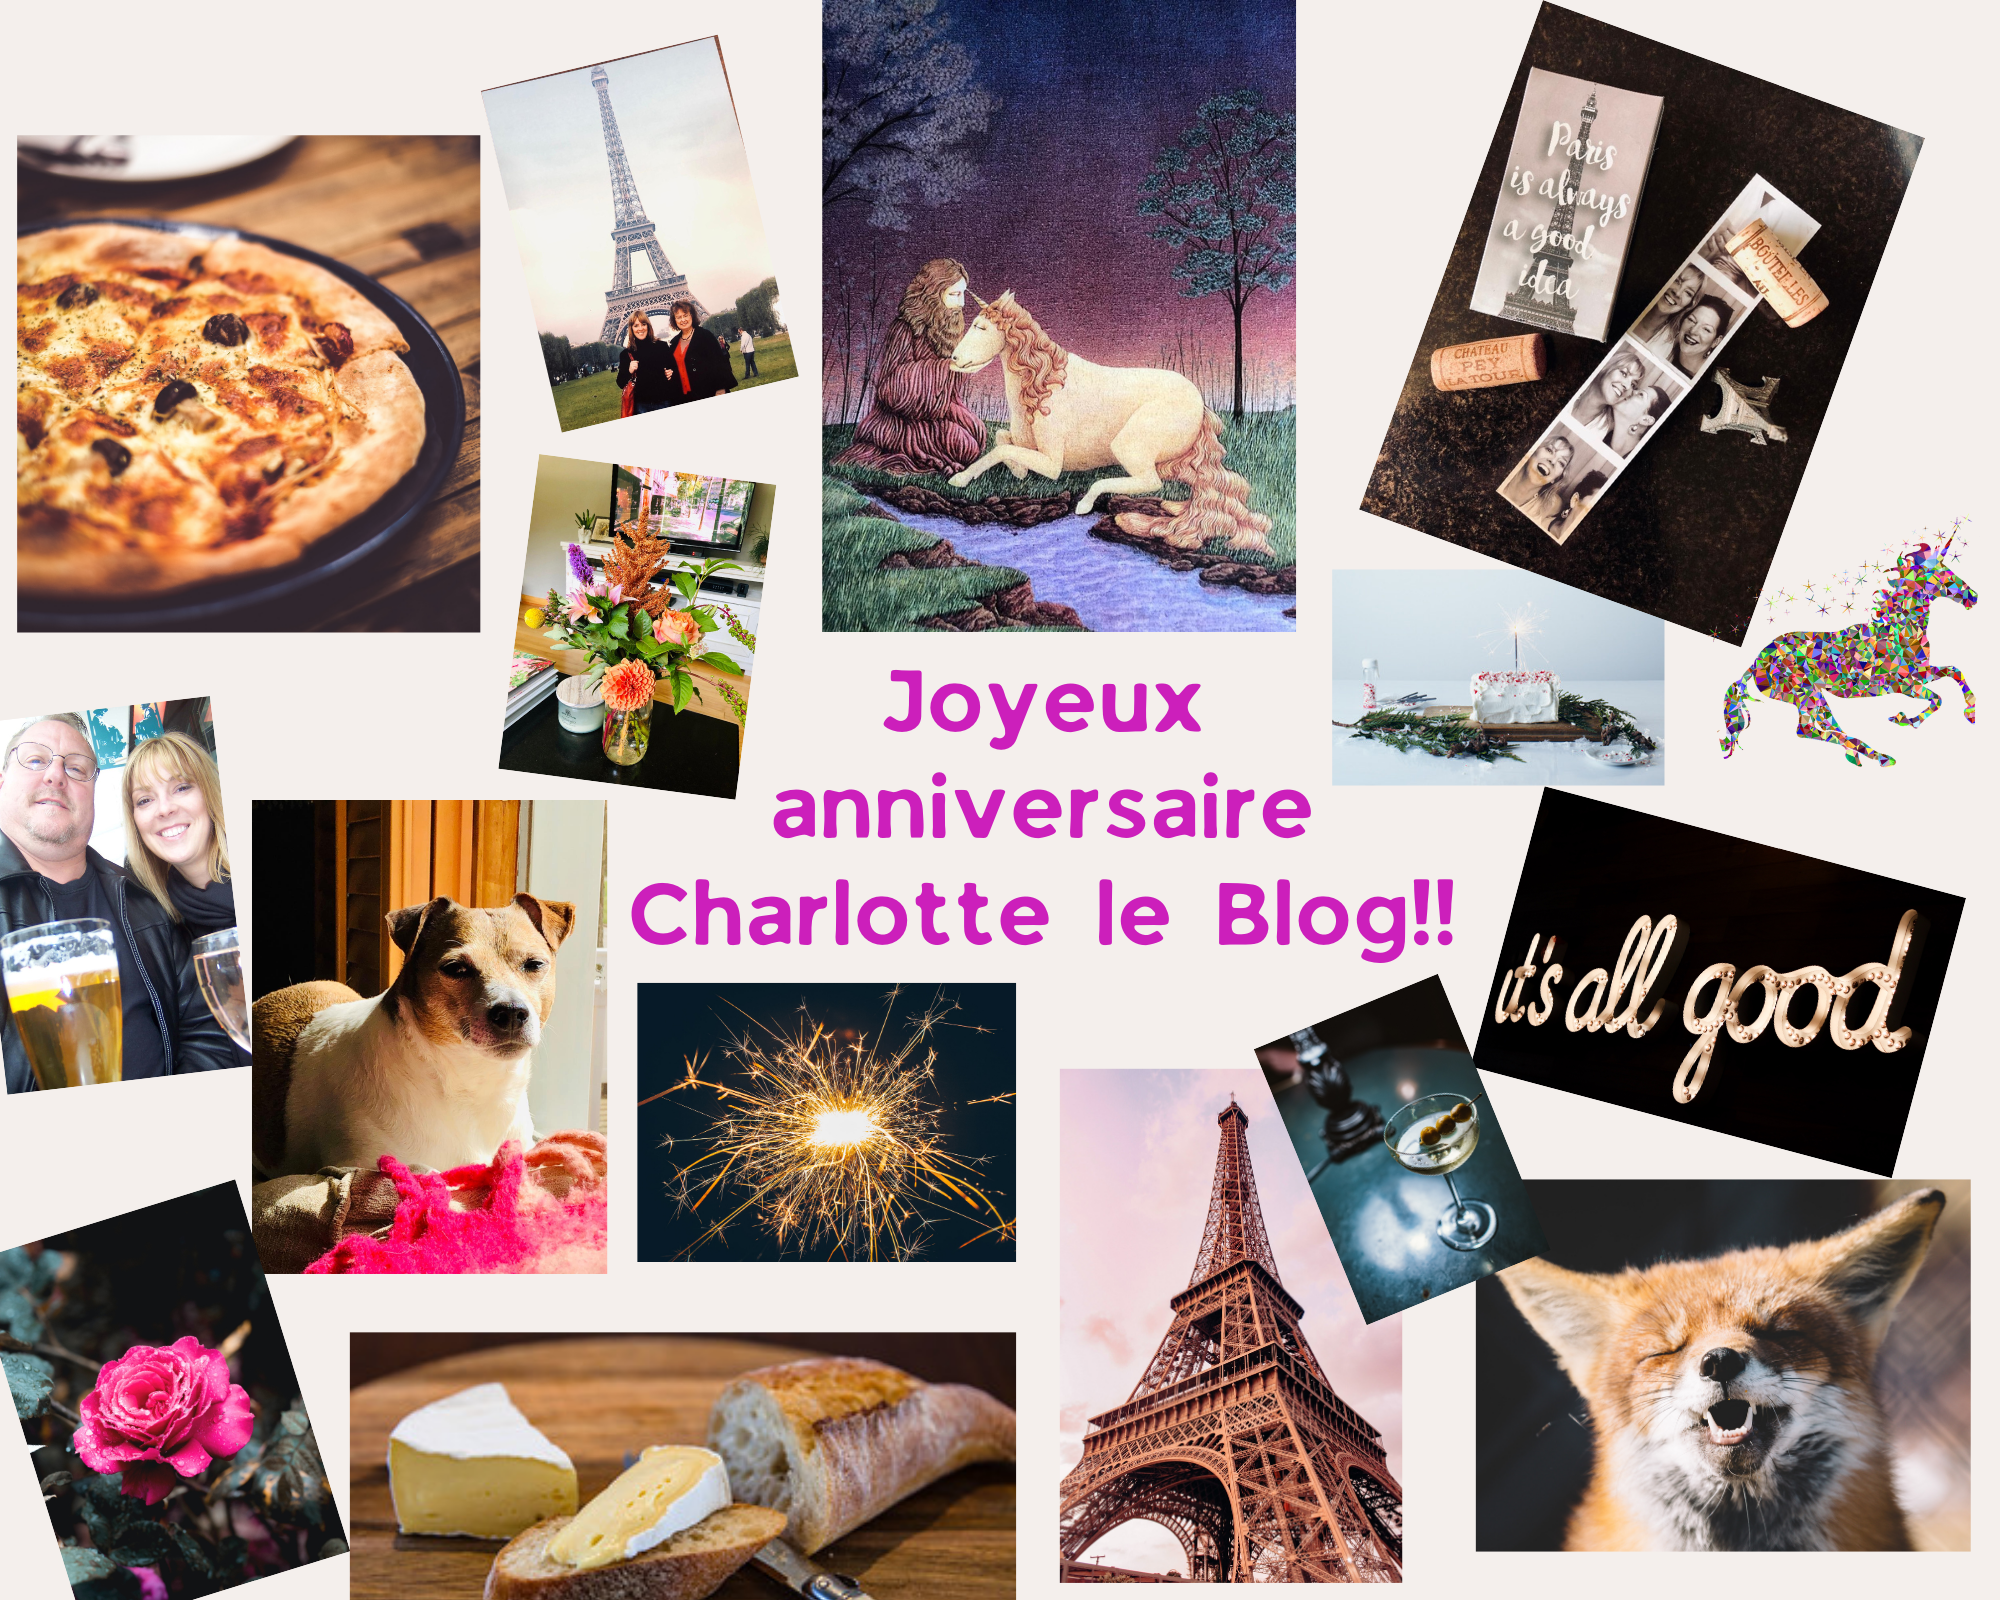 Joyeux anniversaire Charlotte le Blog!